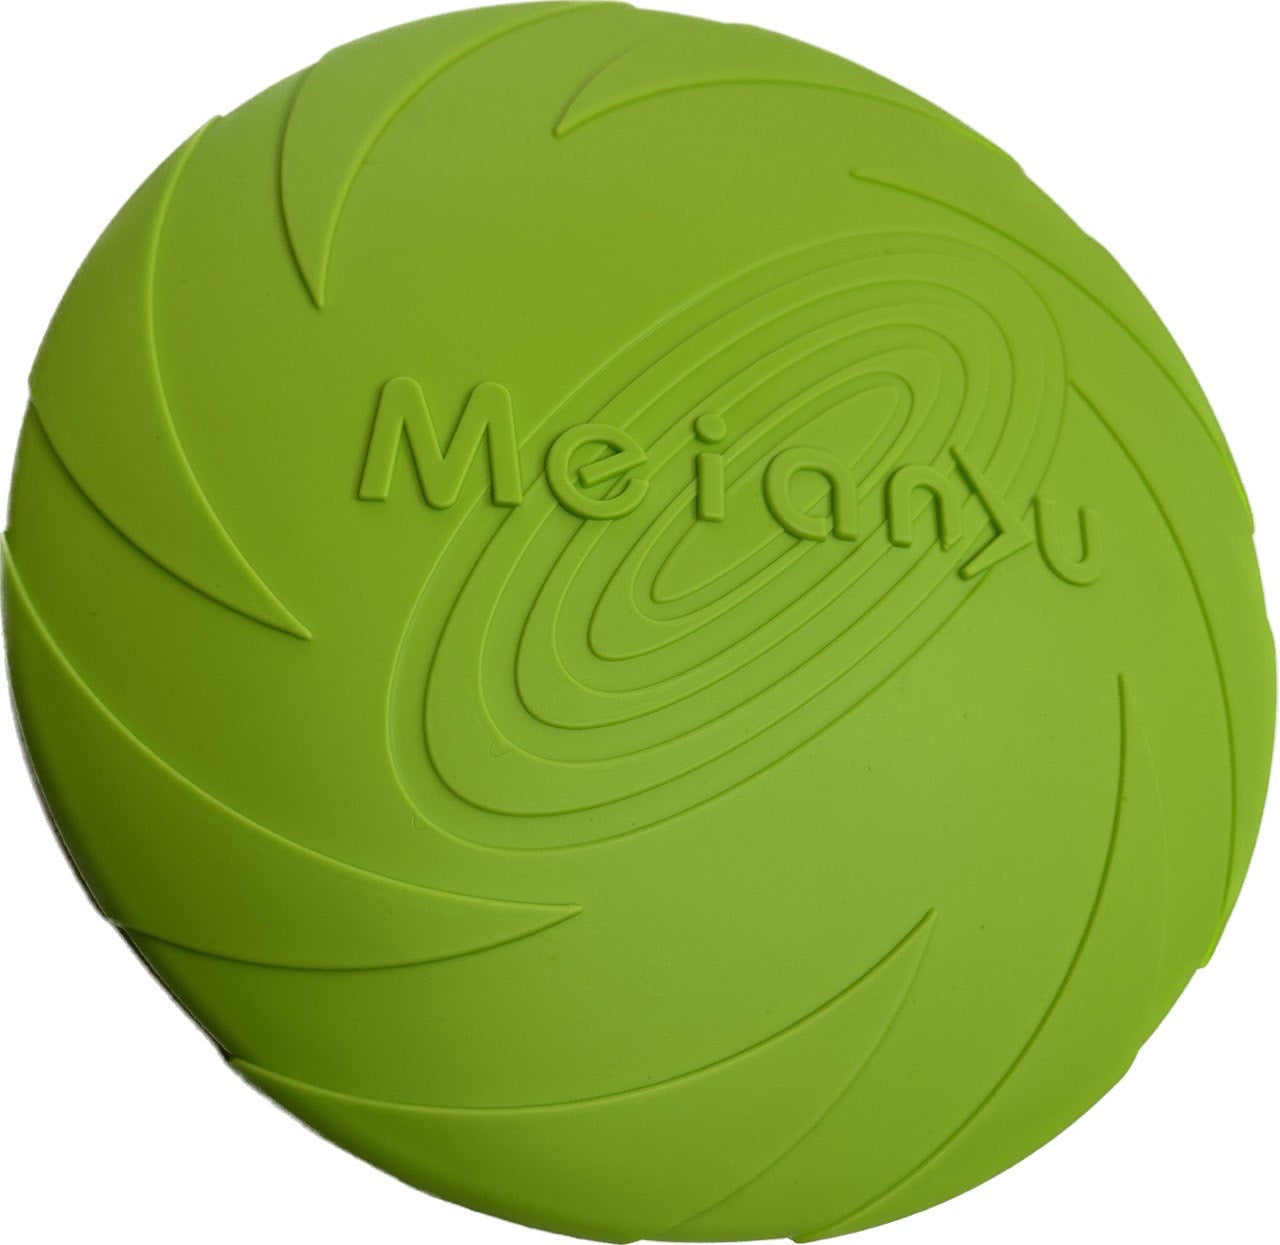 Meianu Fetch Disc